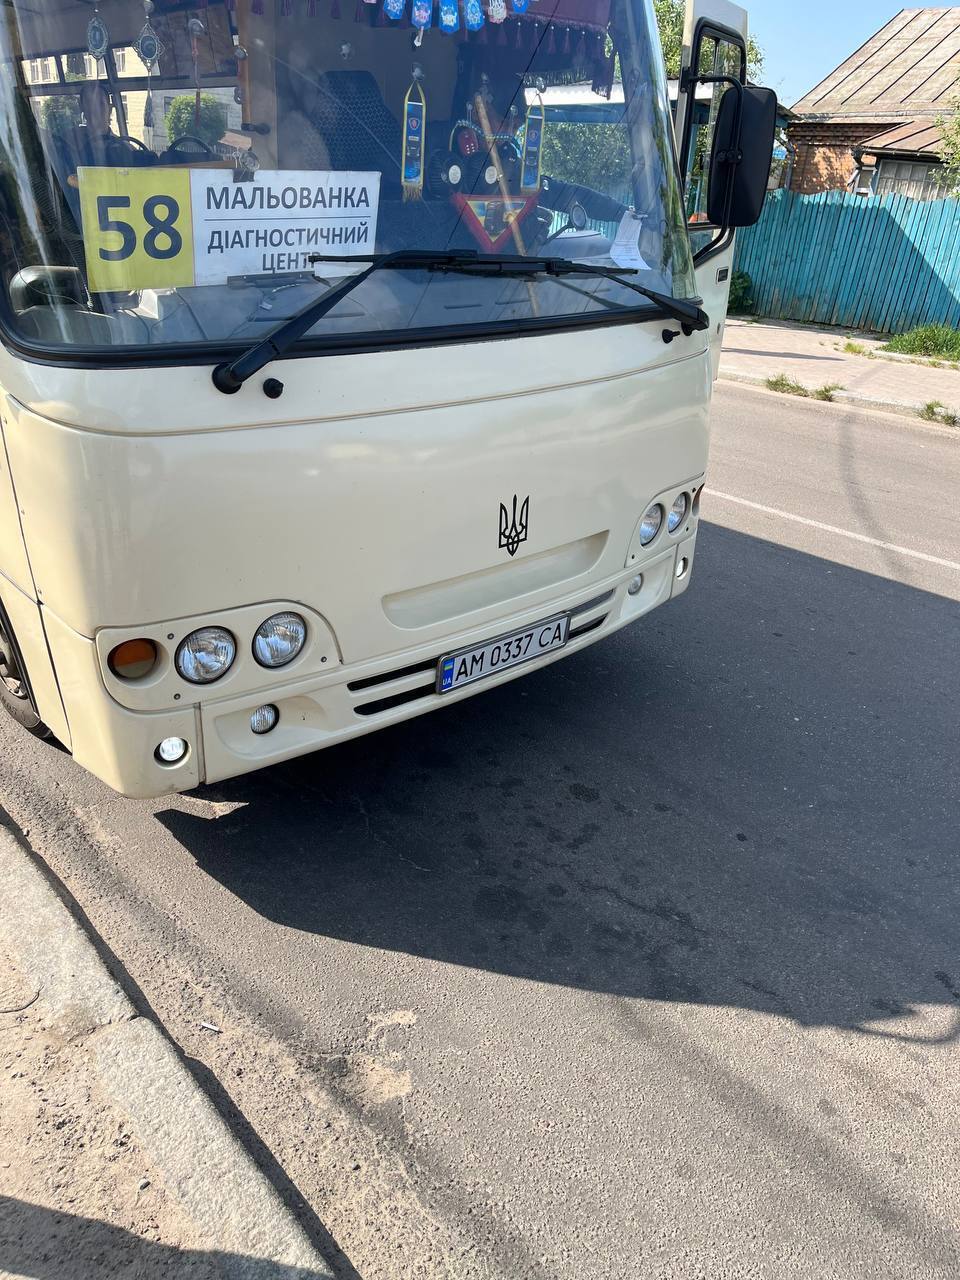 У Житомирі в маршрутці розгорівся конфлікт, бо водій відмовився безкоштовно везти військового: пасажири заступилися